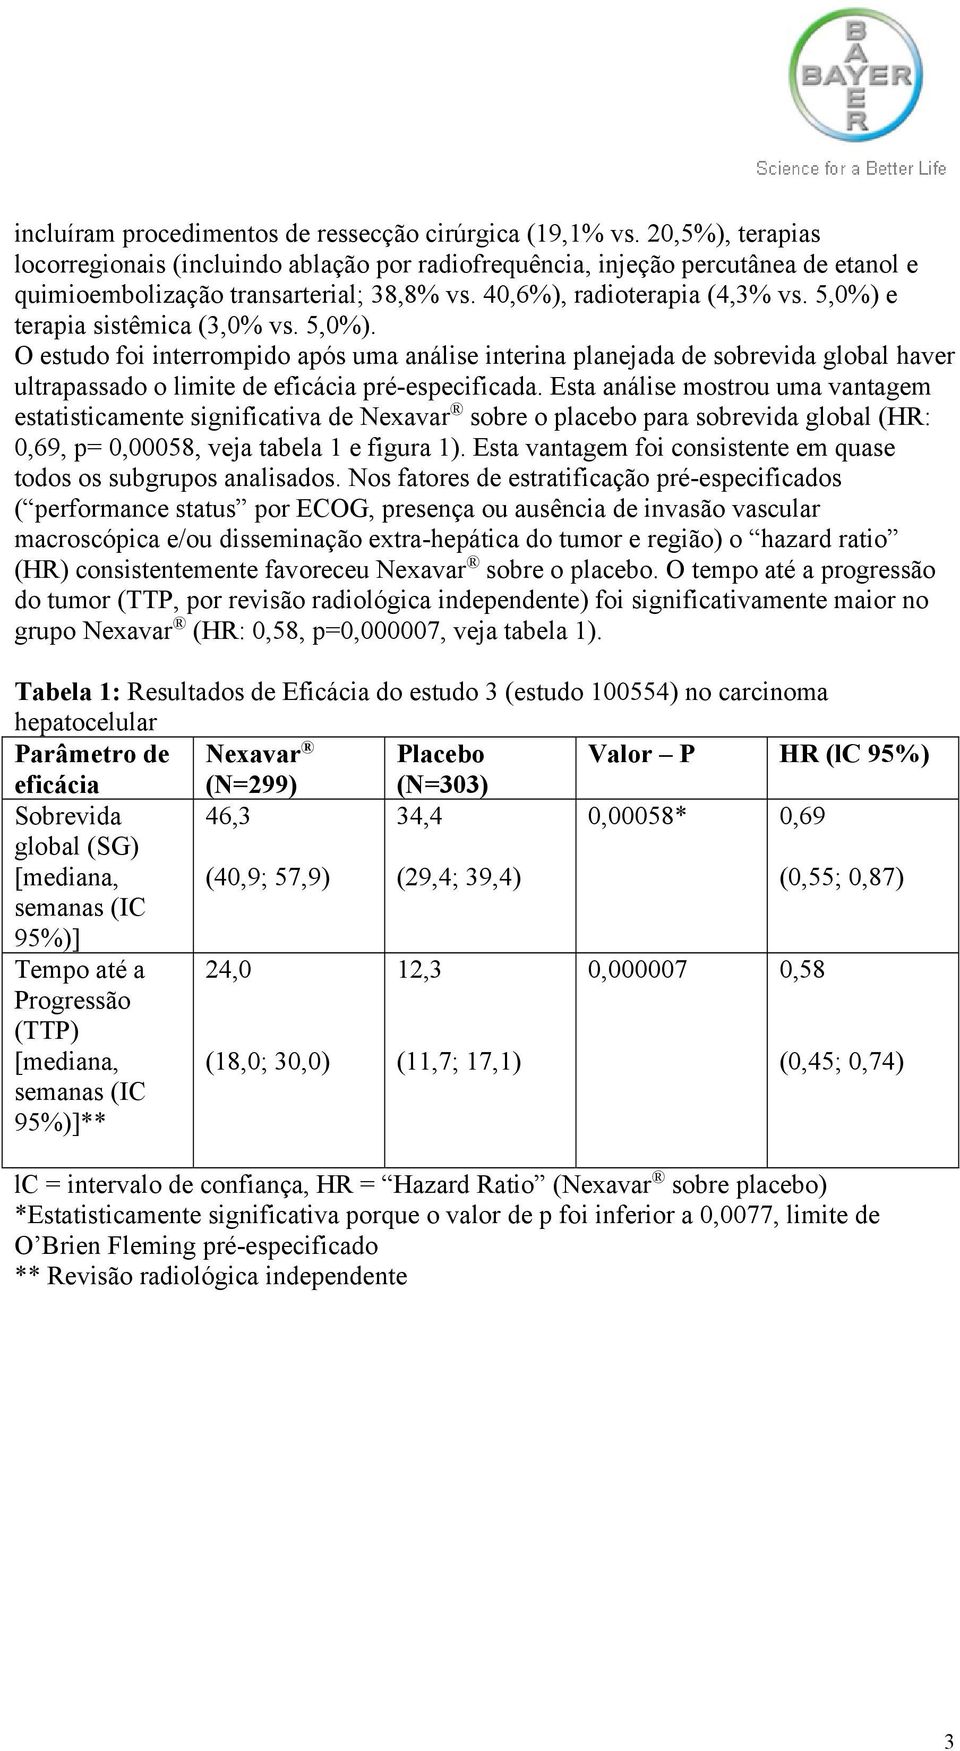 Esta análise mostrou uma vantagem estatisticamente significativa de Nexavar sobre o placebo para sobrevida global (HR: 0,69, p= 0,00058, veja tabela 1 e figura 1).